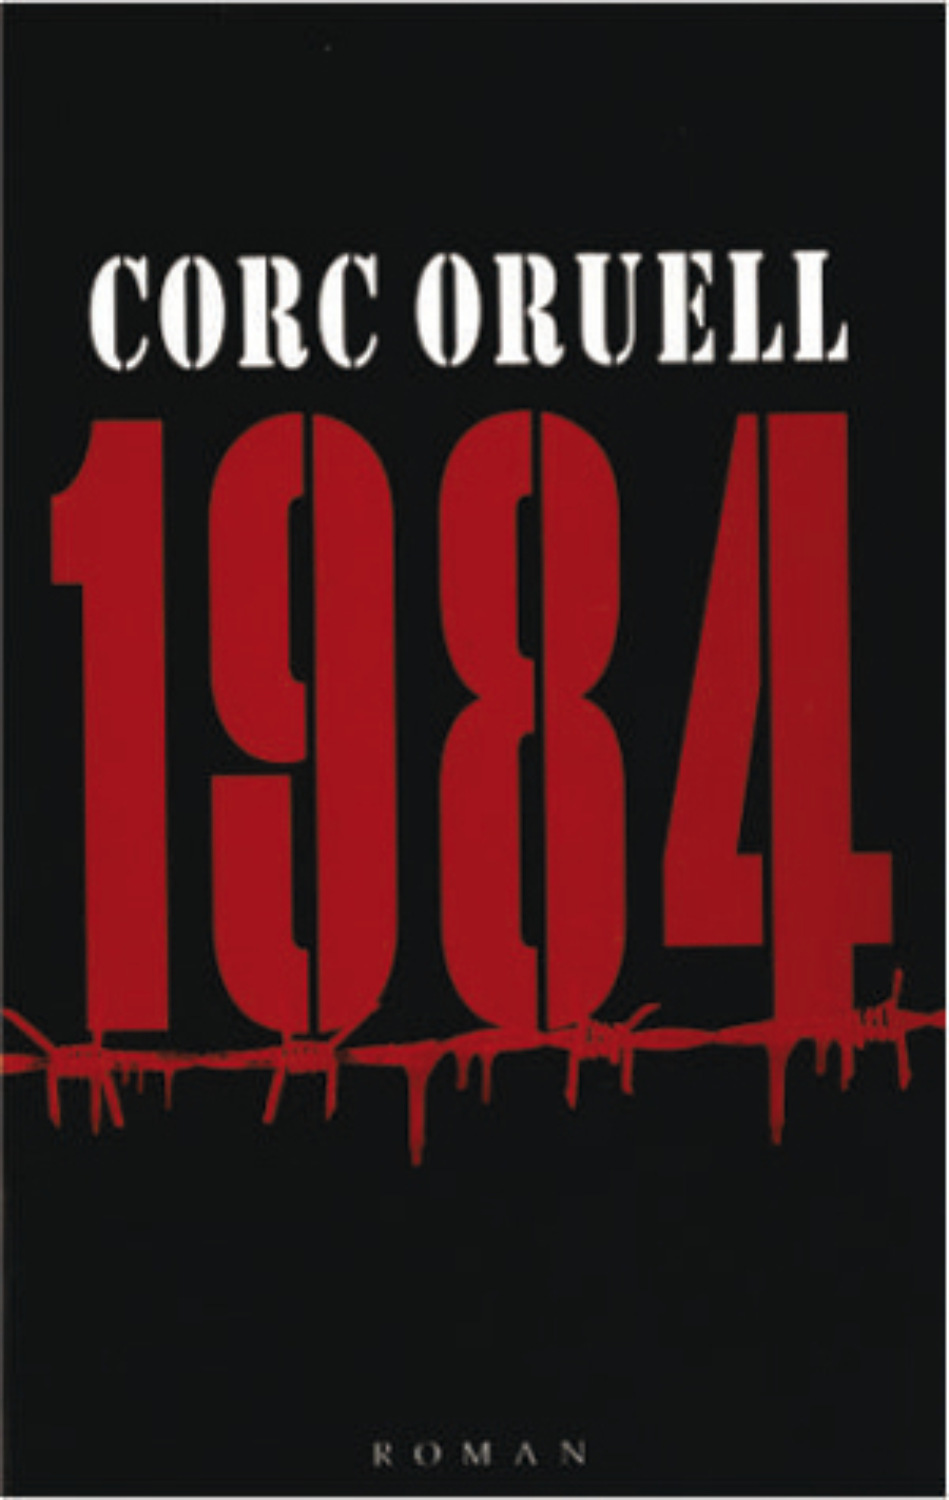 Книга 1984 аудиокнига. 1984 Аудиокнига. 1984 Обложка книги. Heyvanistan Corc Oruell. George Orwell Kitab.